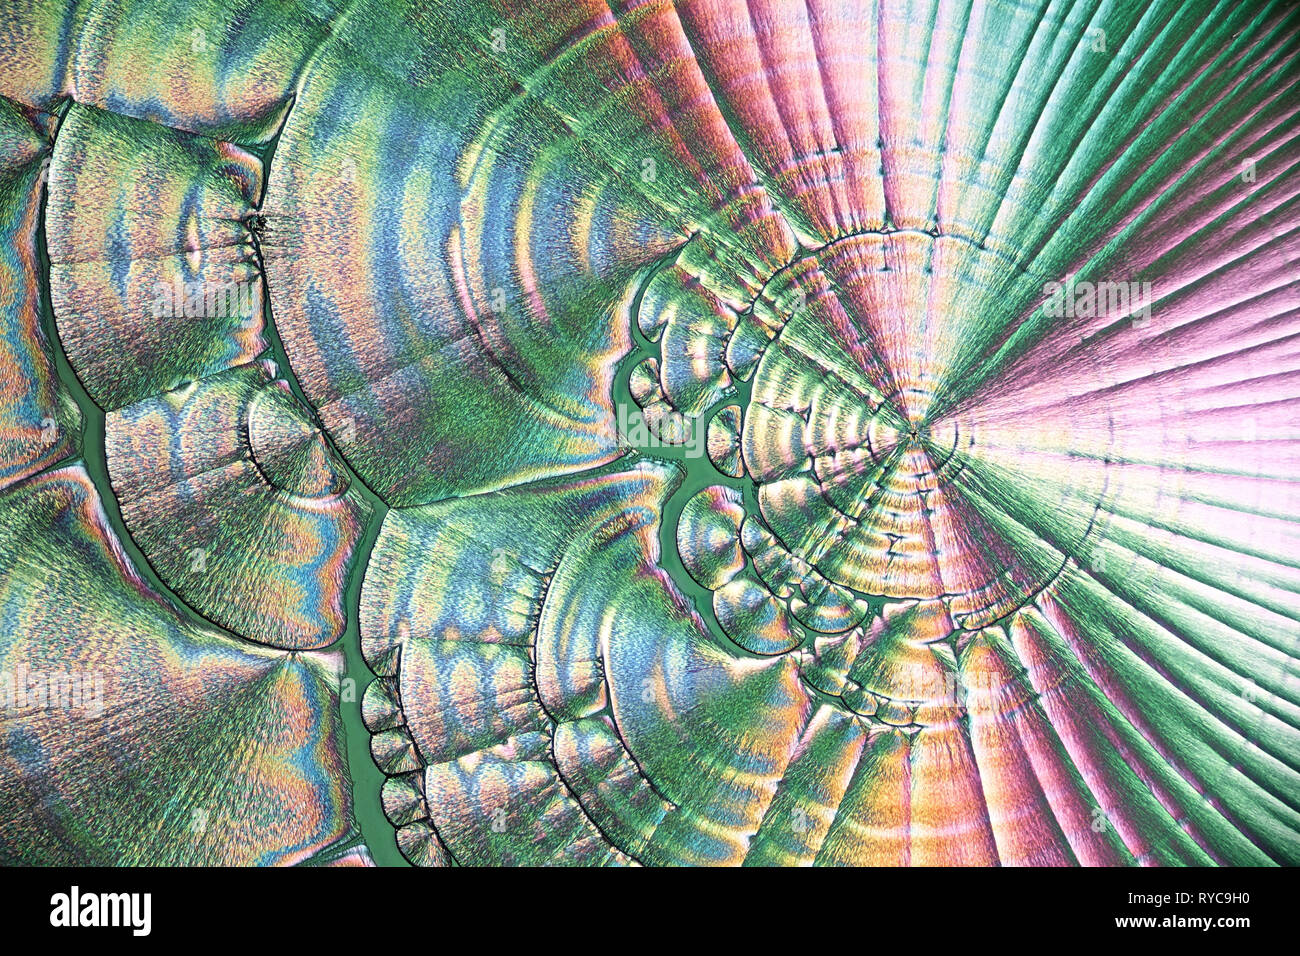 Wissenschaft und Kunst Dies ist Ascorbinsäure, bekannt als Vitamin C, in kristallisierter Form fotografiert bekannt Stockfoto